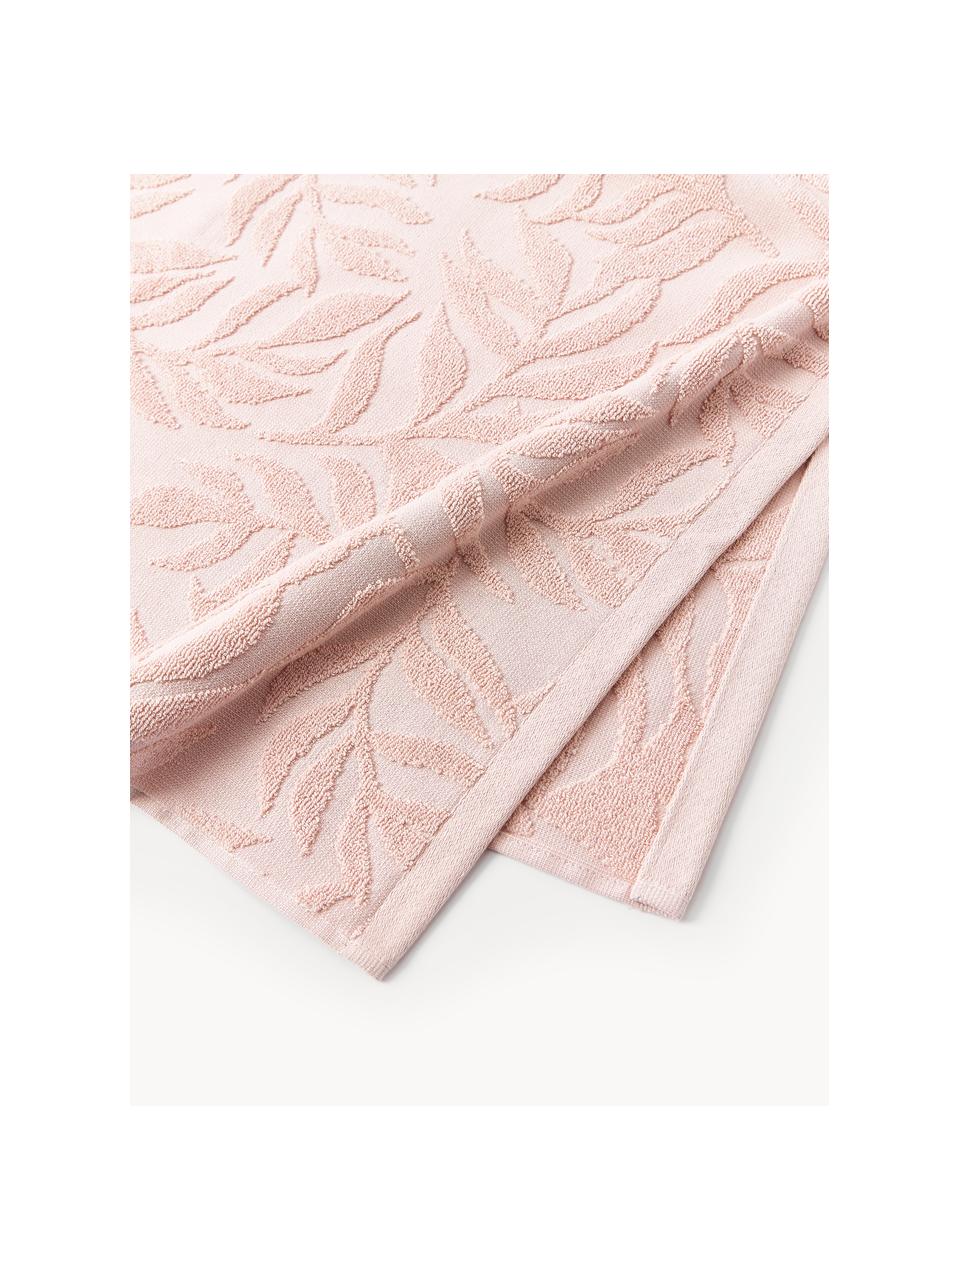 Komplet ręczników z bawełny Leaf, 3 elem., Jasny różowy, Komplet z różnymi rozmiarami